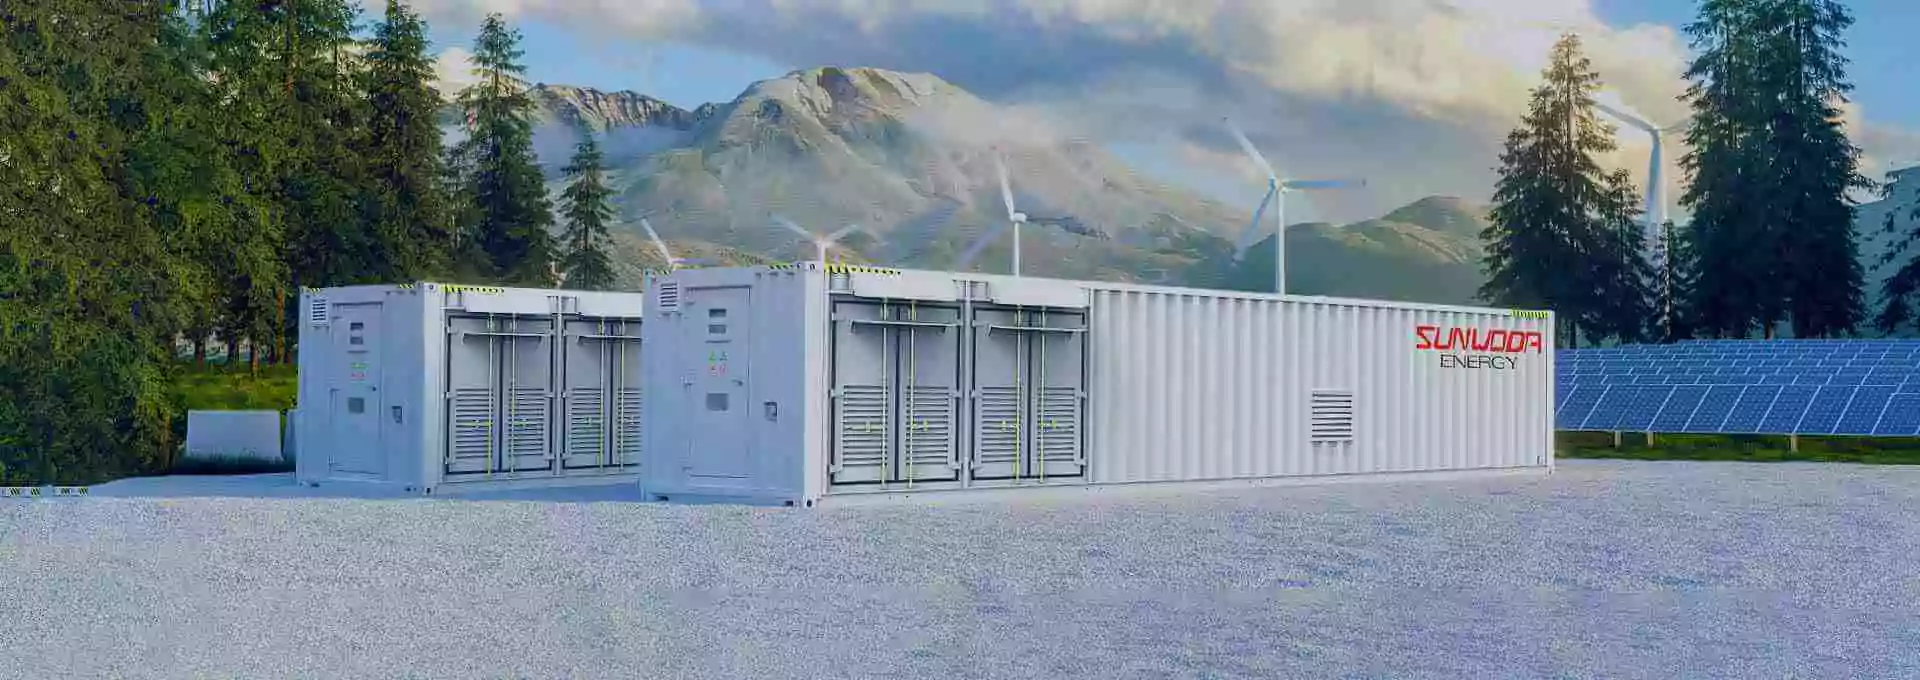 sunwoda containerized battery energy storage system